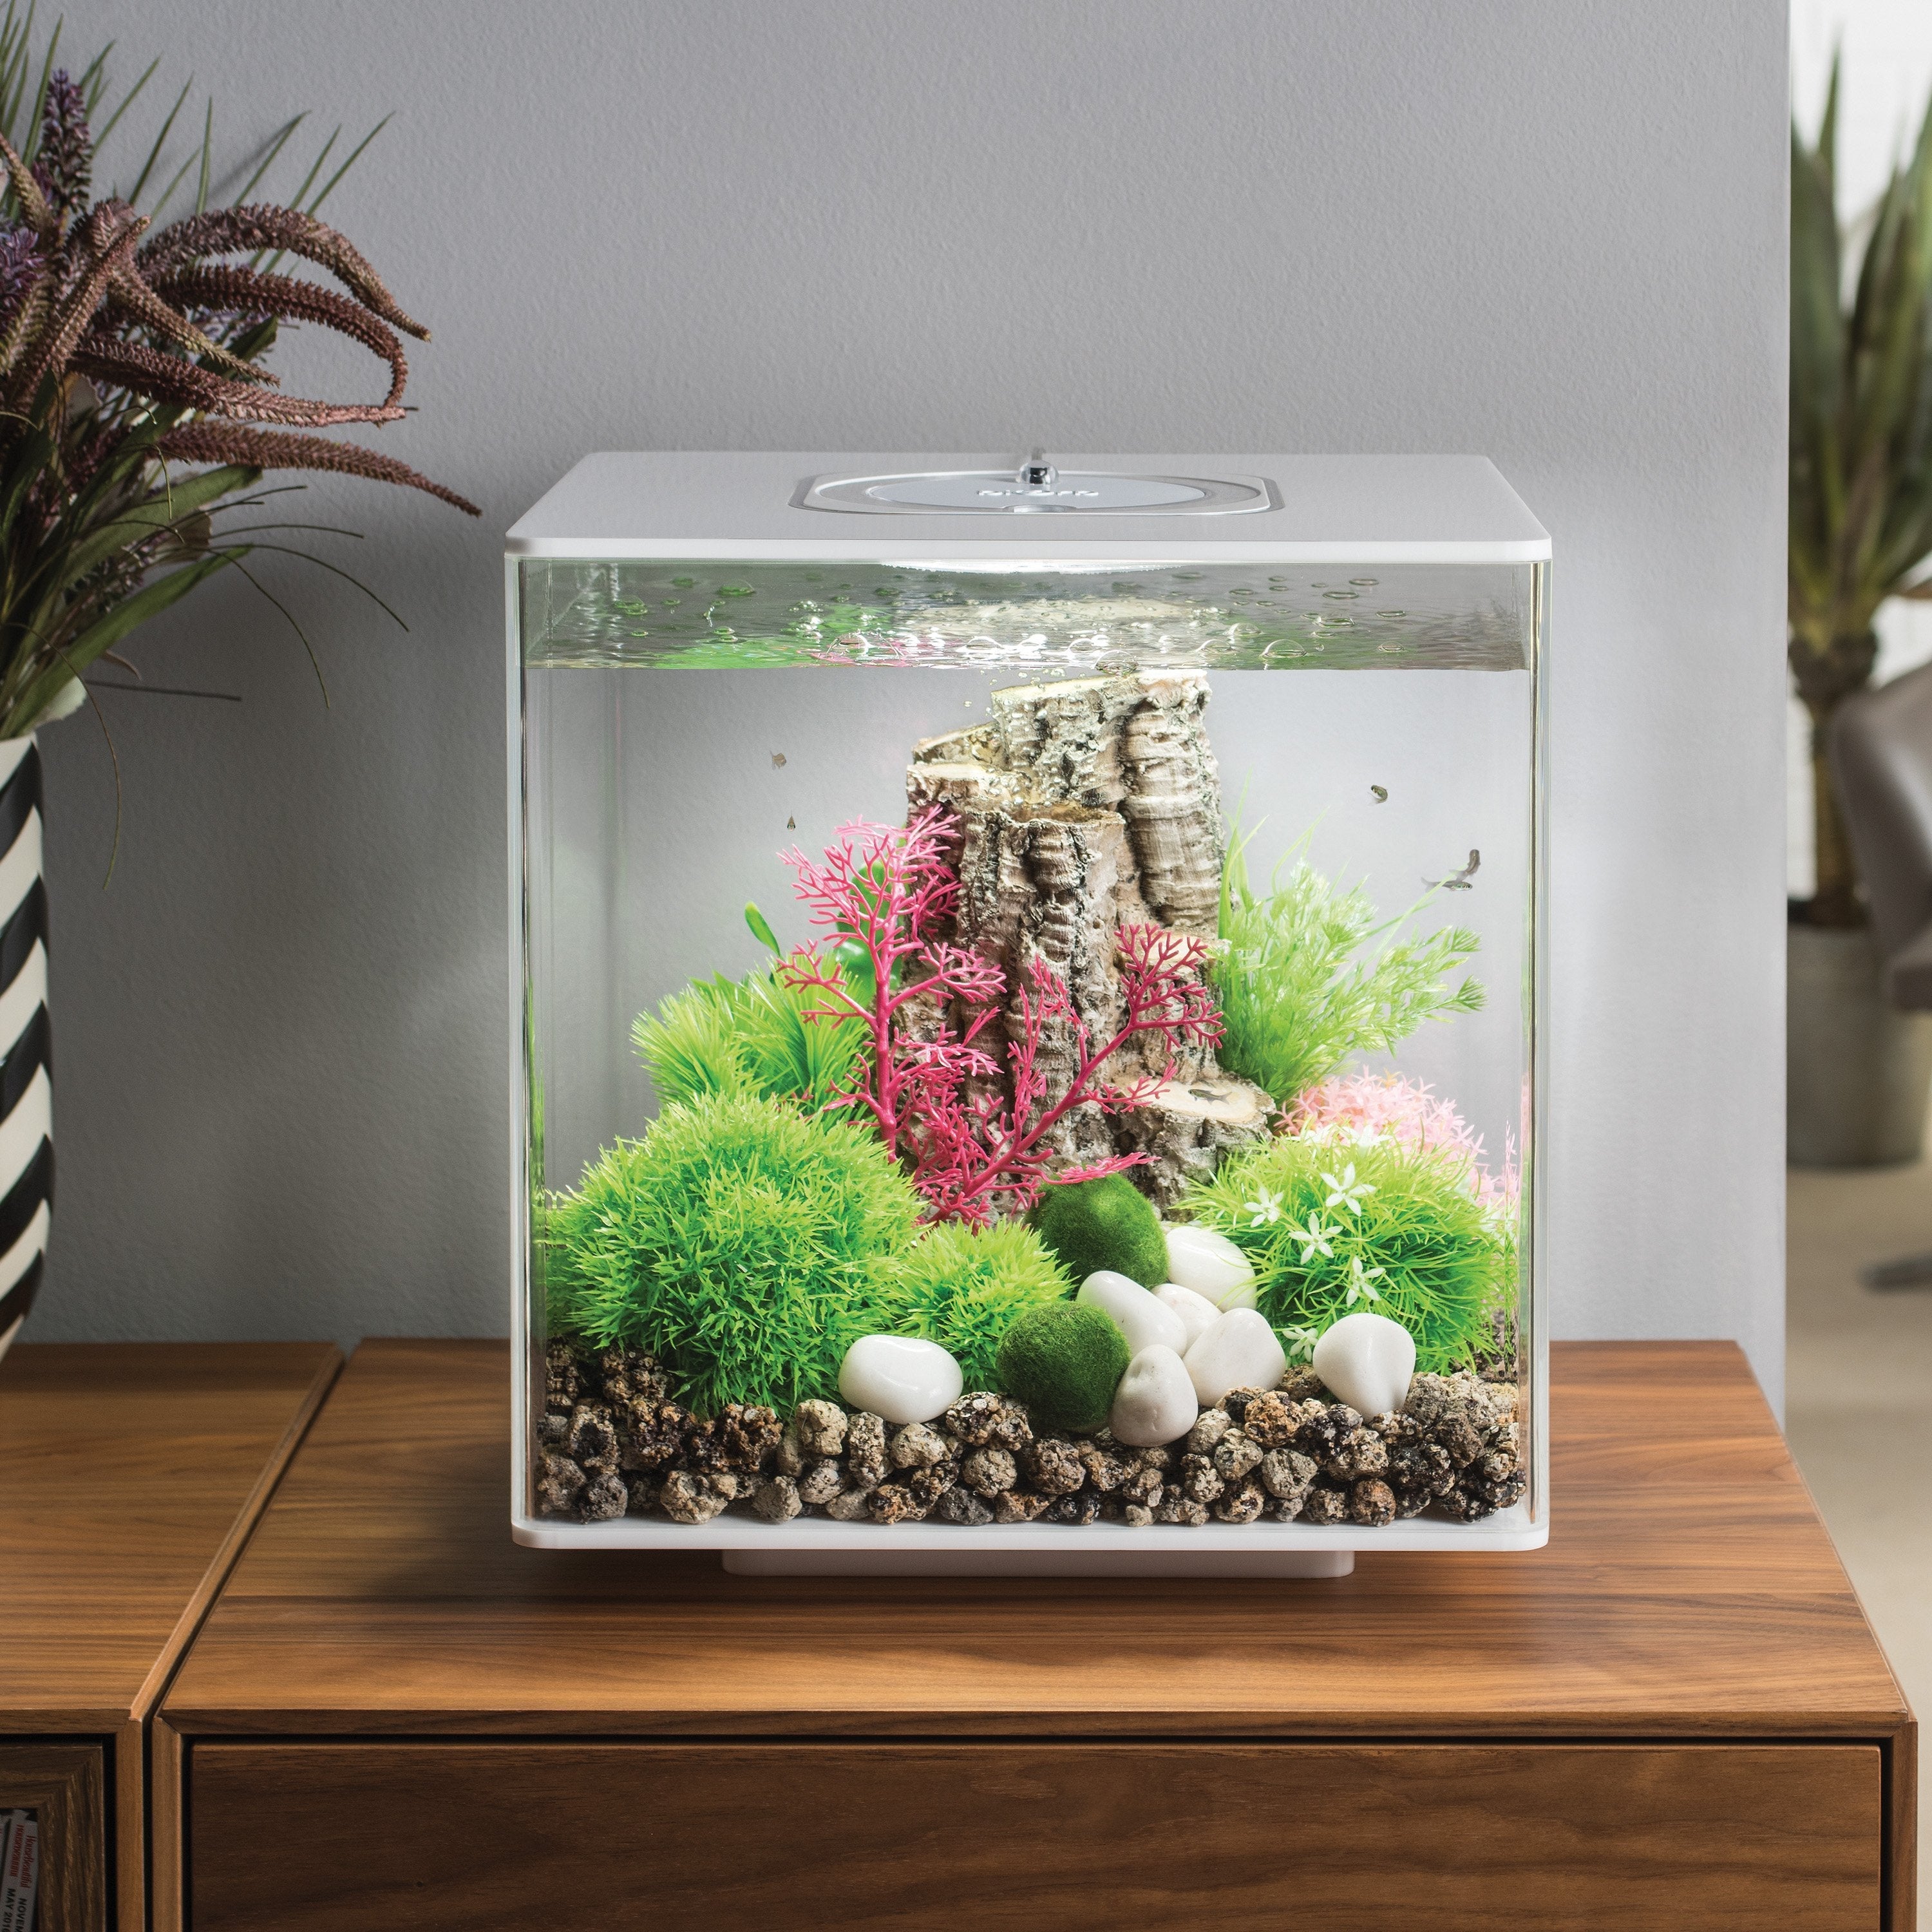 Get inspiration for your aquarium design by using the biOrb CUBE 30 Aquarium